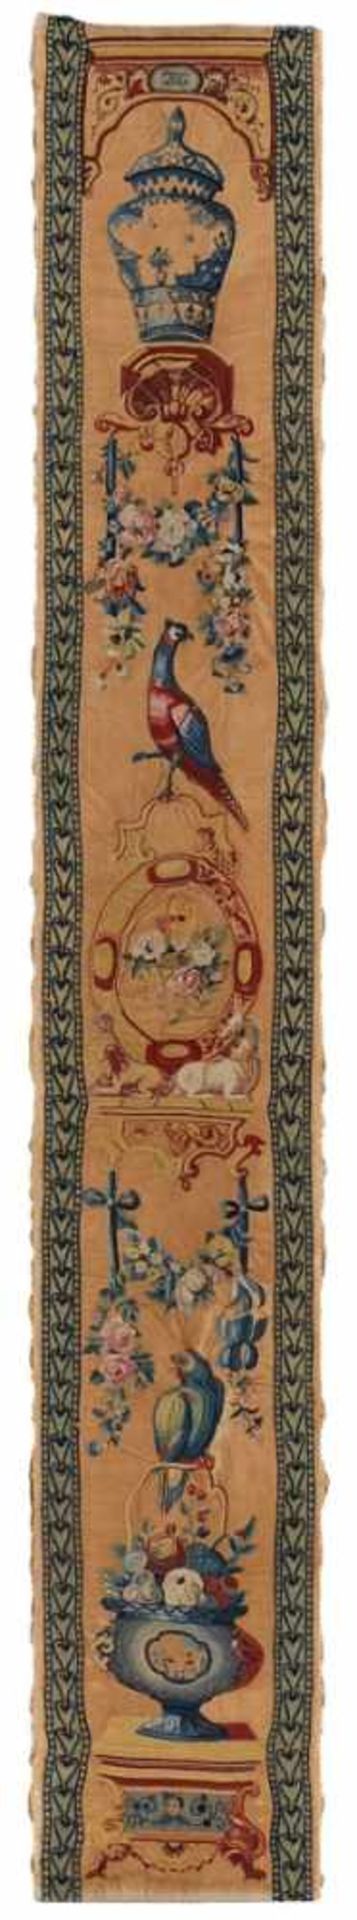 Hochrechteckiges Panel, England um 1780.Beiger Seidenfond m. mehrfarbiger ornamentaler Stickerei (